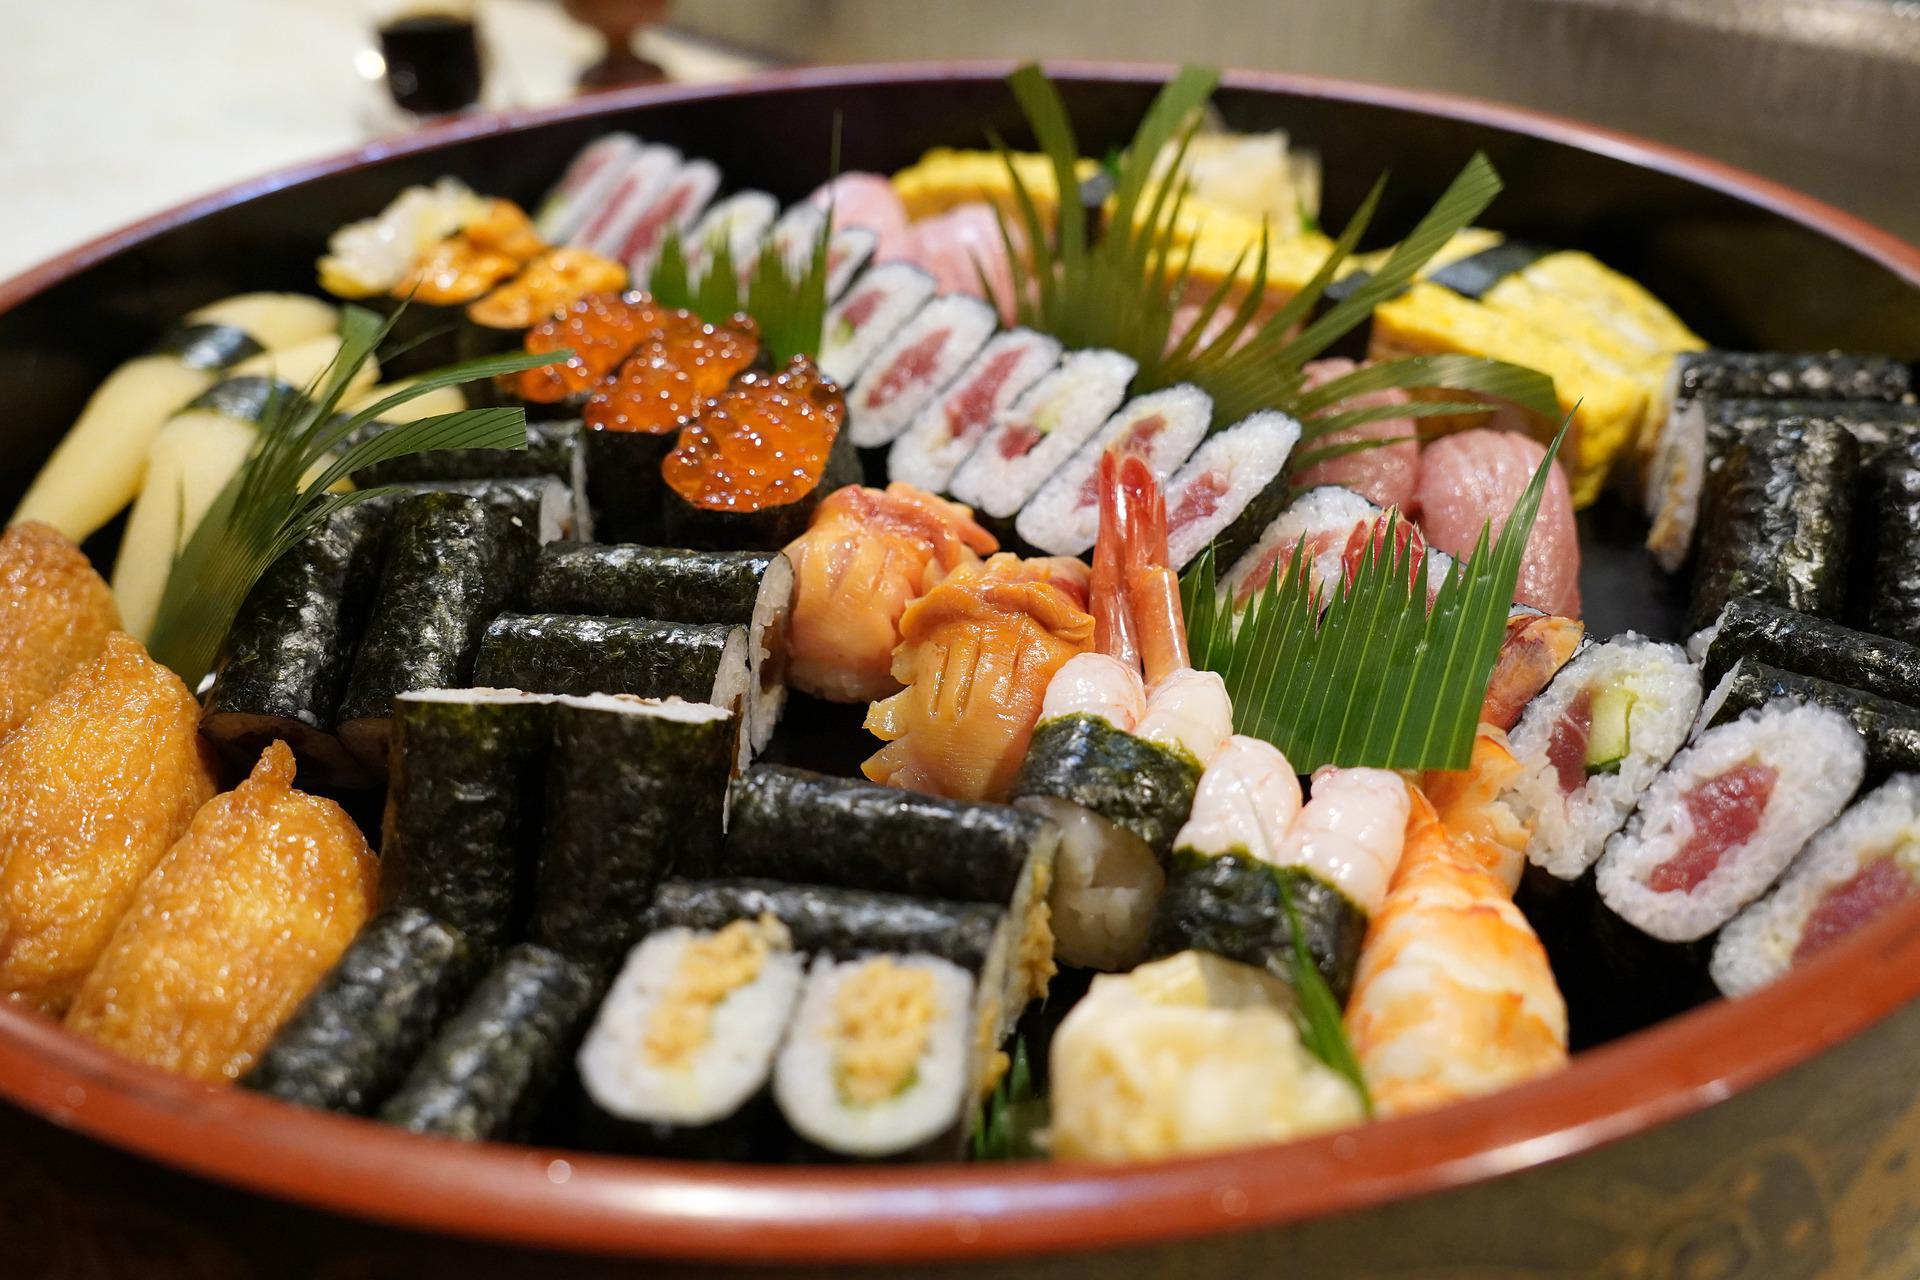 Lugares para comer em Caldas Novas: os melhores restaurantes | Rodízio de comida japonesa | Conexão123